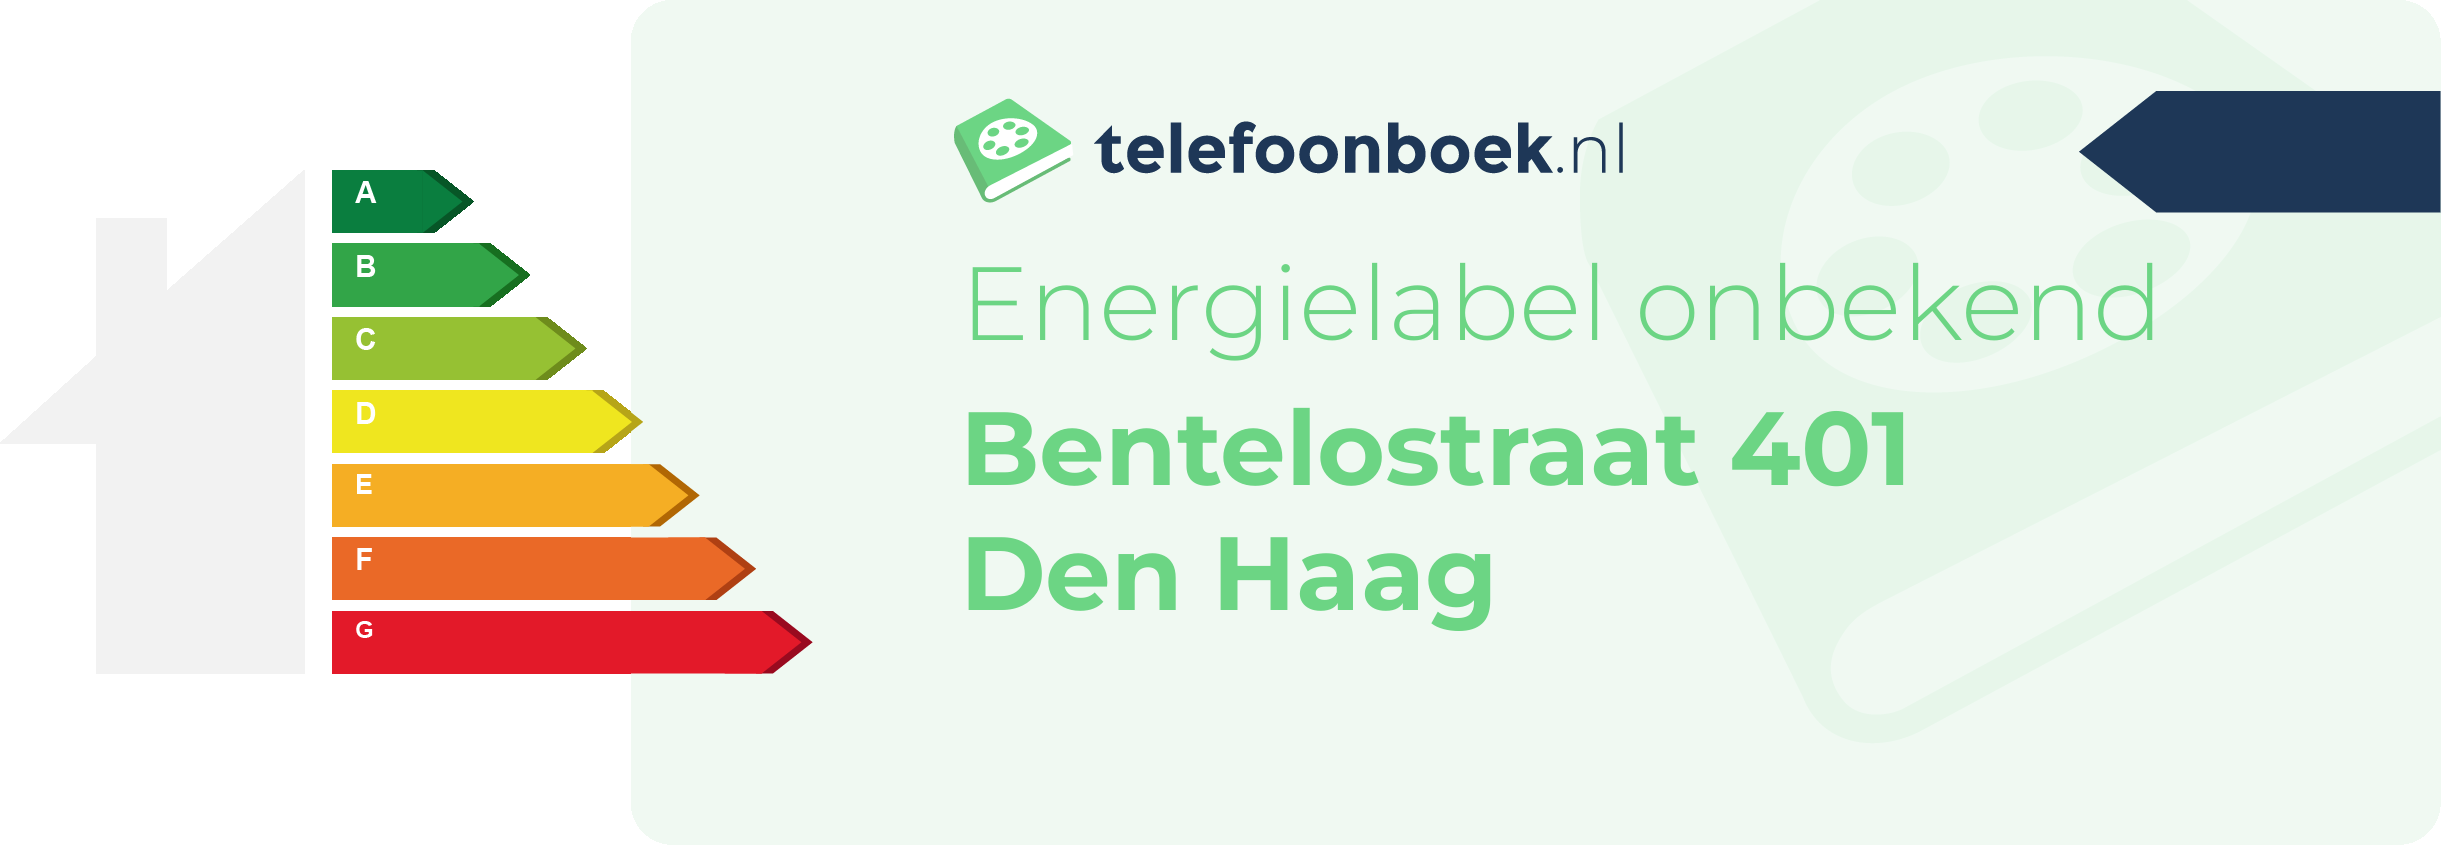 Energielabel Bentelostraat 401 Den Haag